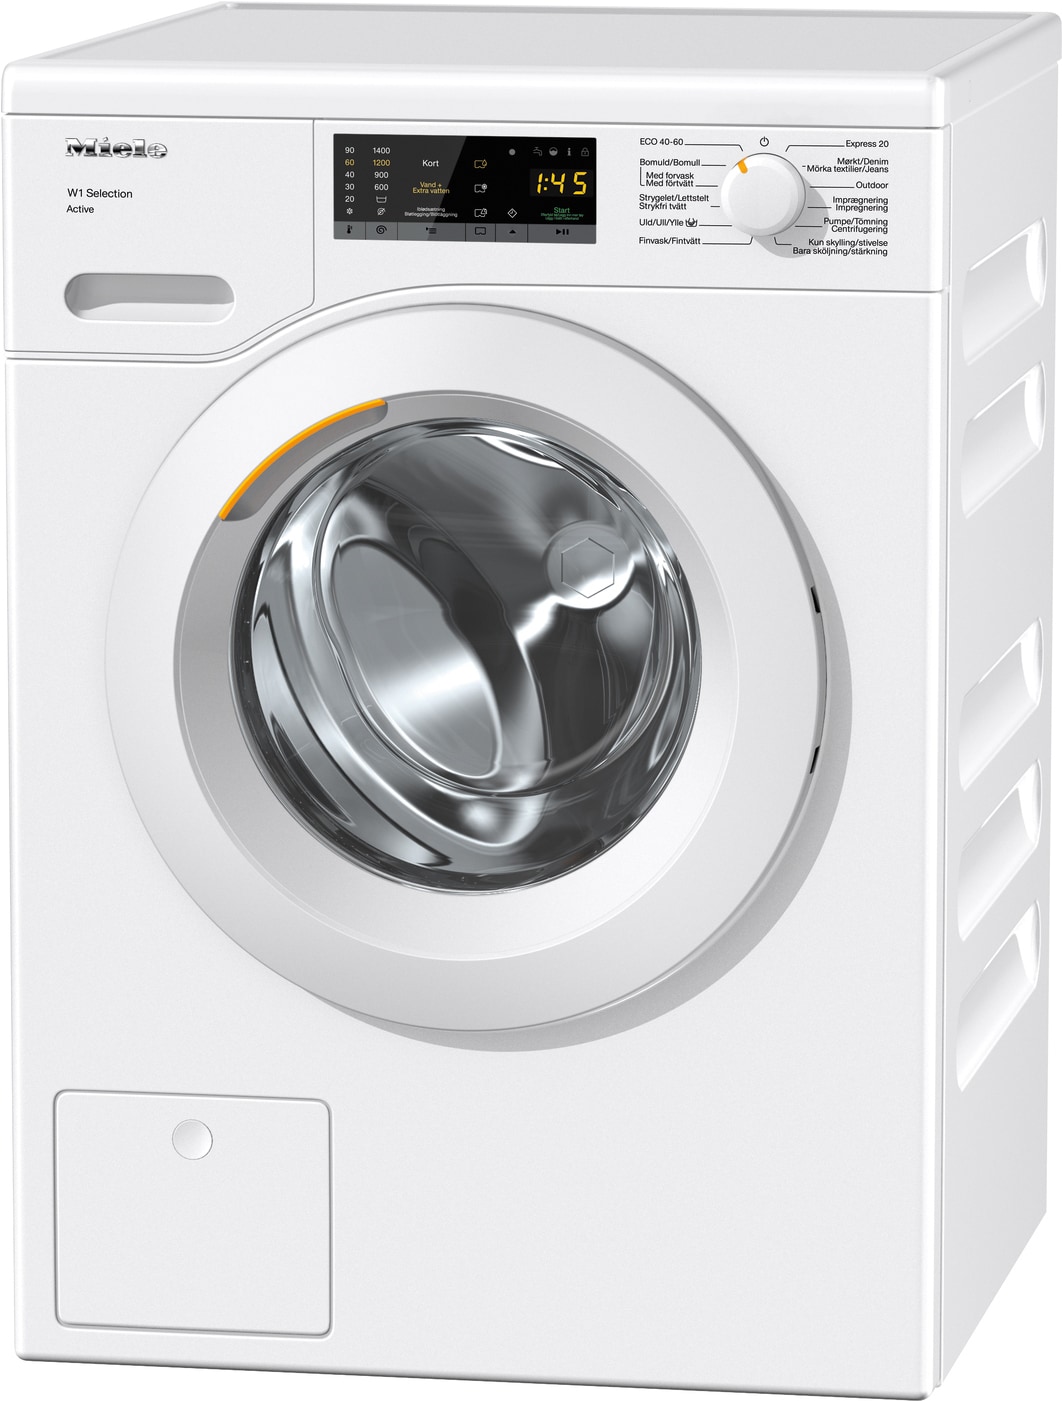 Oplev en blid og effektiv vask med Miele Active vaskemaskine - Energy  Star-certificeret og lang levetid